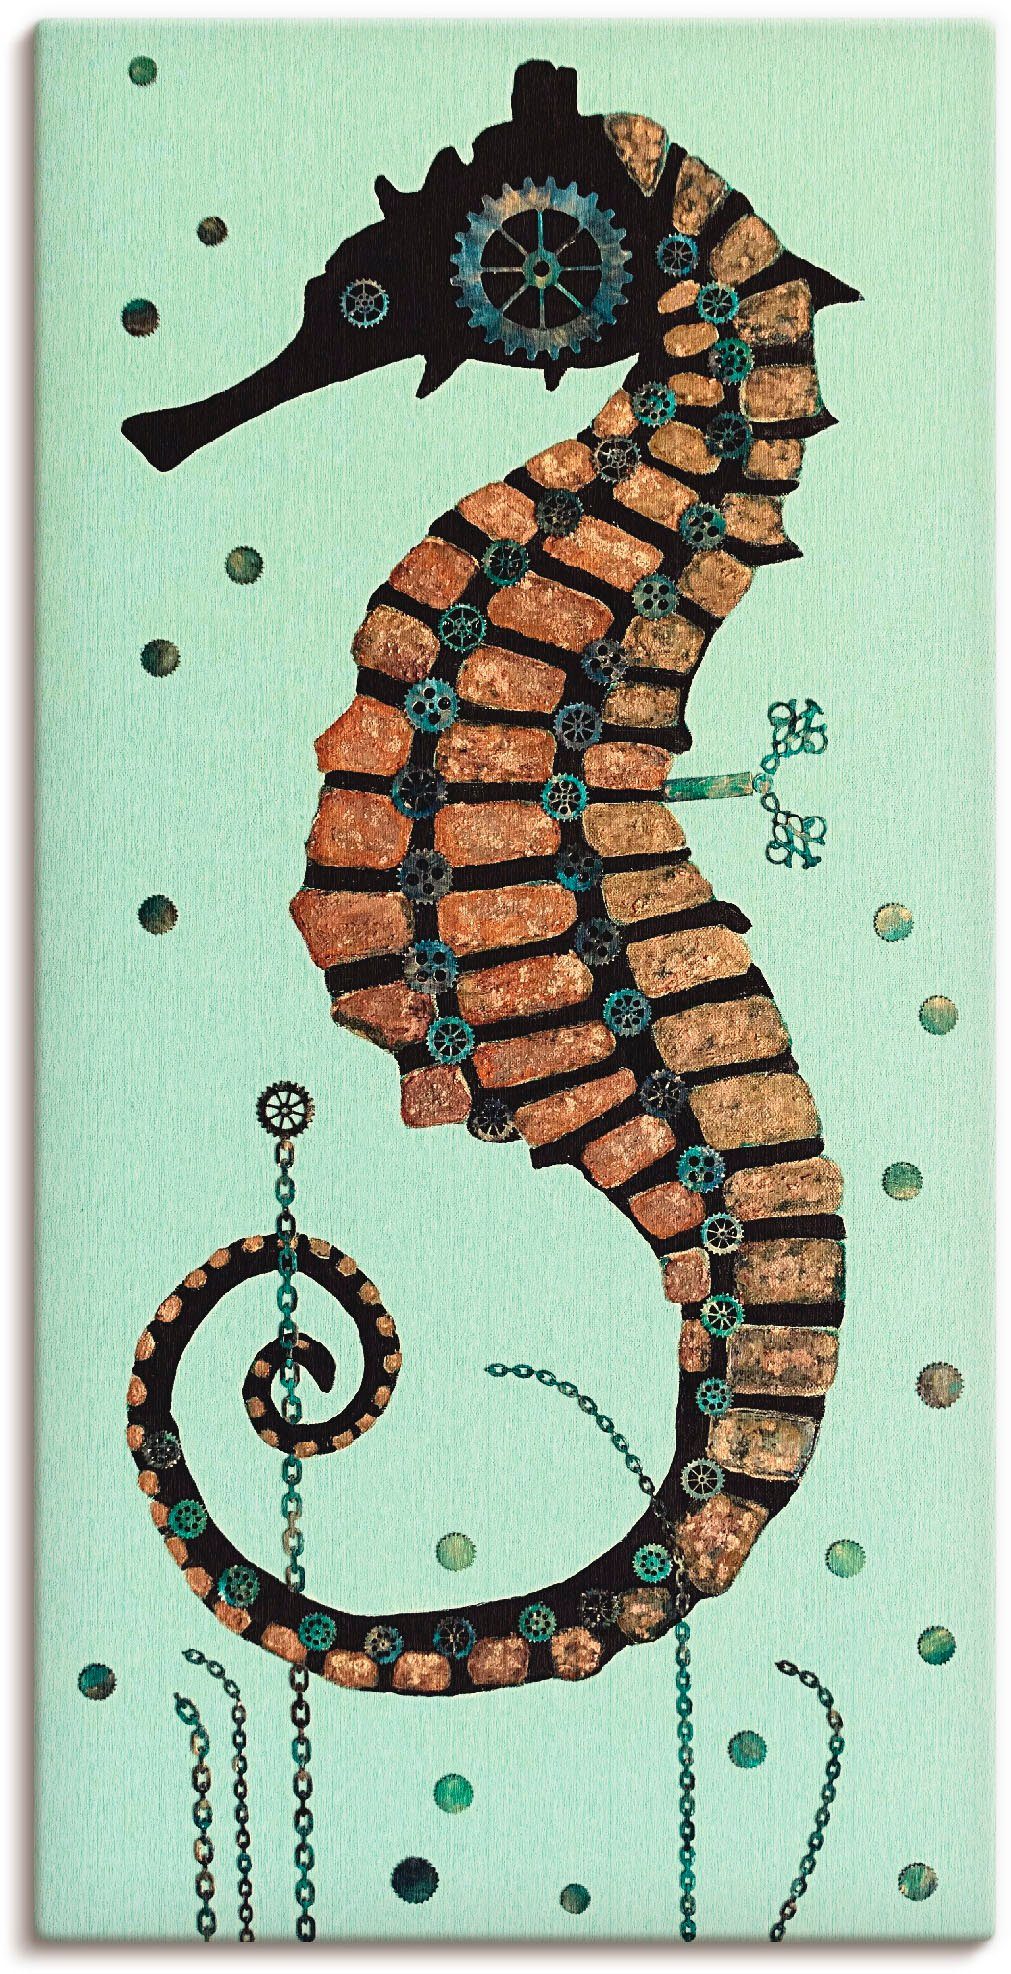 Artland Artprint Zeepaardje textuur in vele afmetingen & productsoorten - artprint van aluminium / artprint voor buiten, artprint op linnen, poster, muursticker / wandfolie ook ges